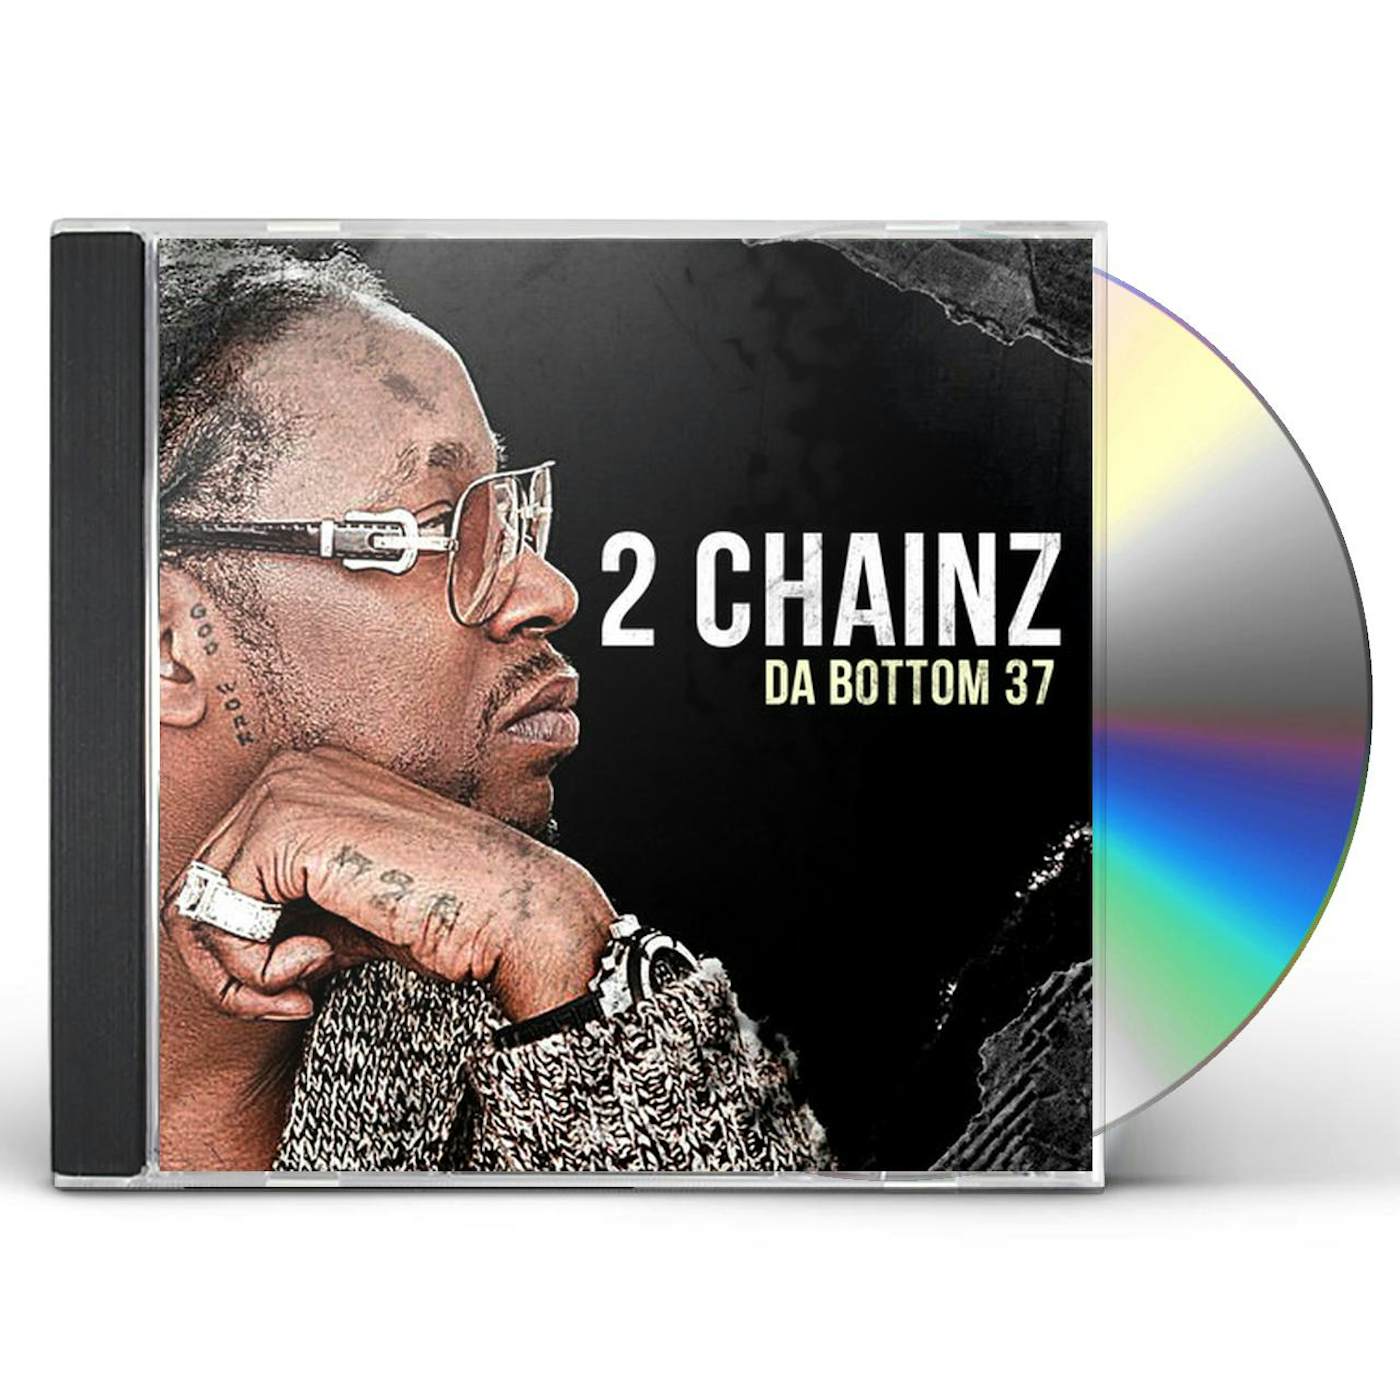 2 Chainz DA BOTTOM 37 CD